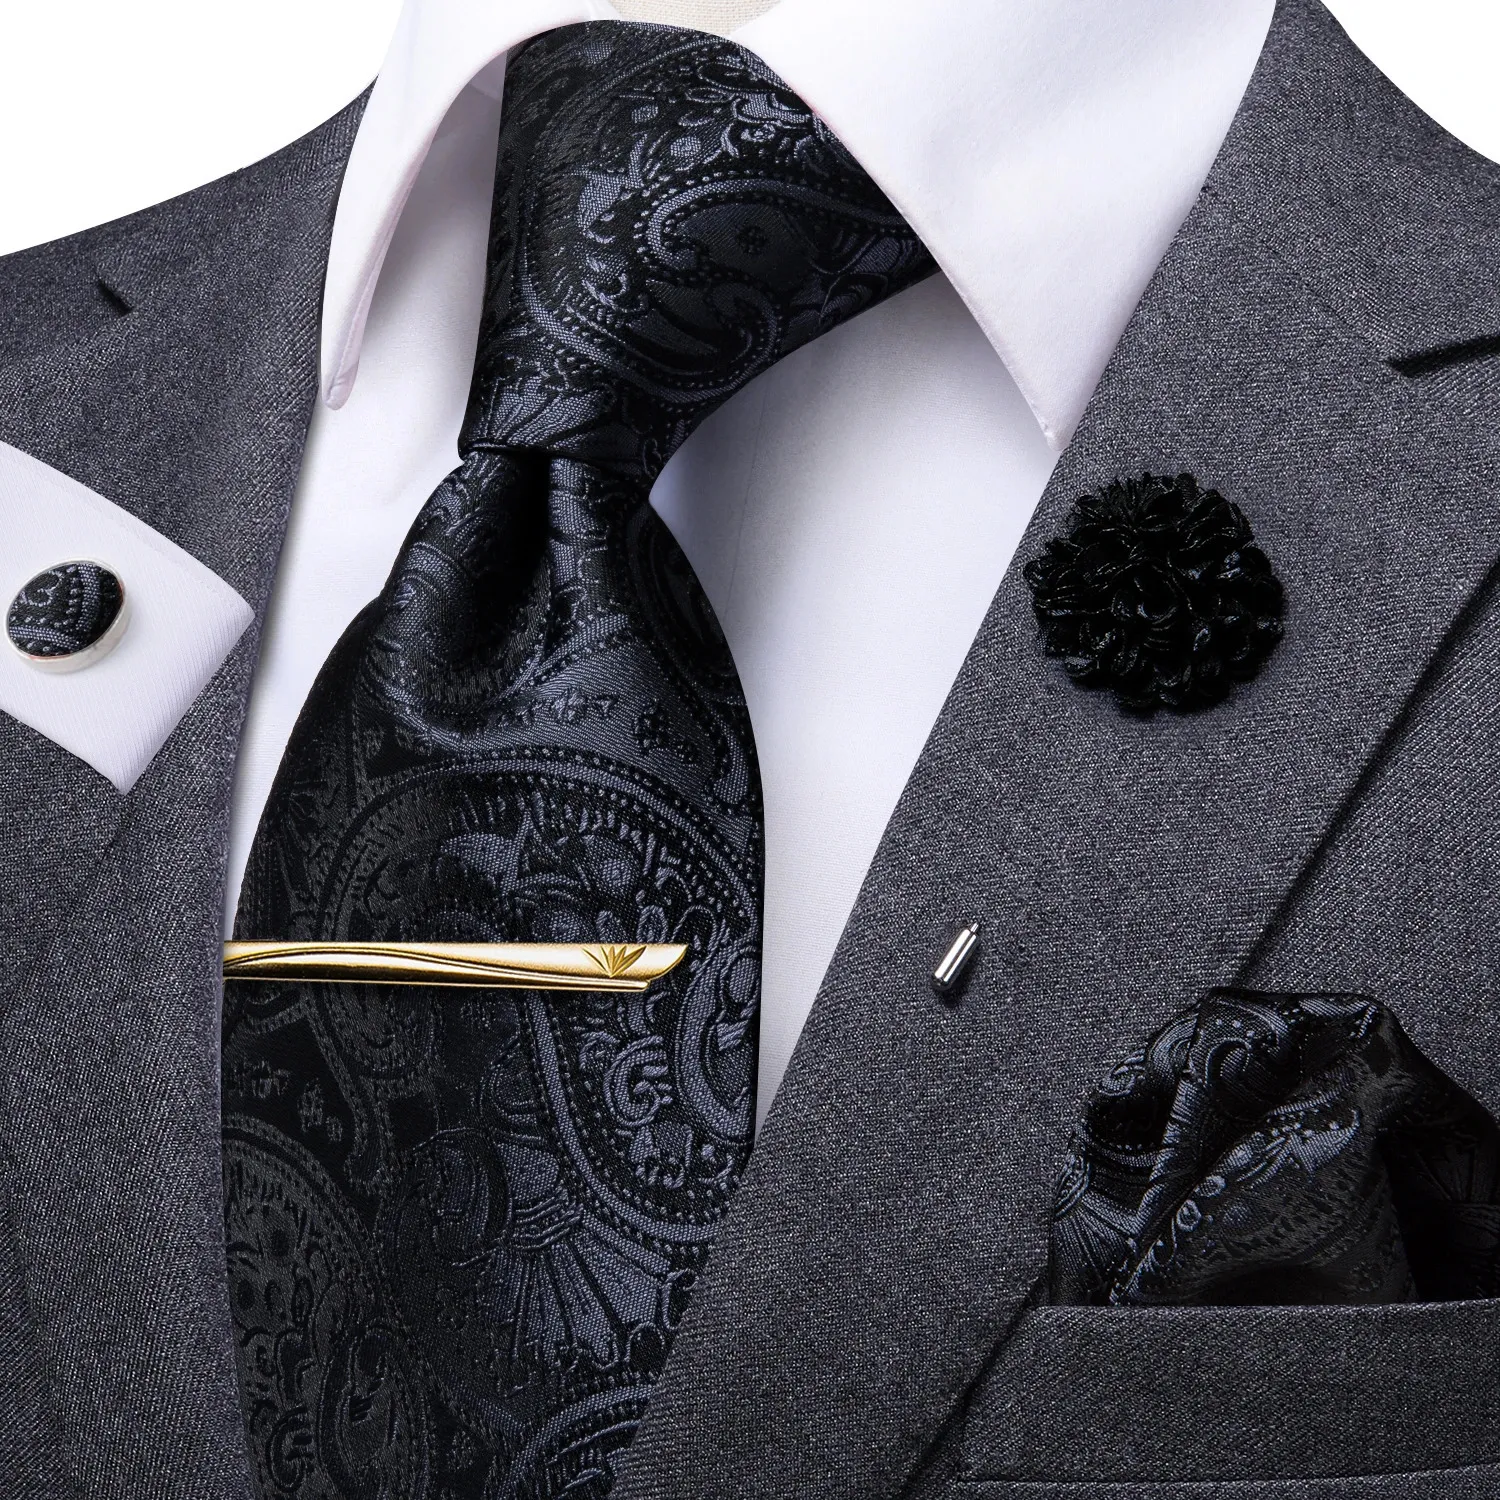 Boyun bağları hi-tie iş siyah paisley kravat erkekler için ipek erkekler kravat kutusu hediye erkekler için lüks kravat hanky kolkluslar ayar resmi elbise 231013